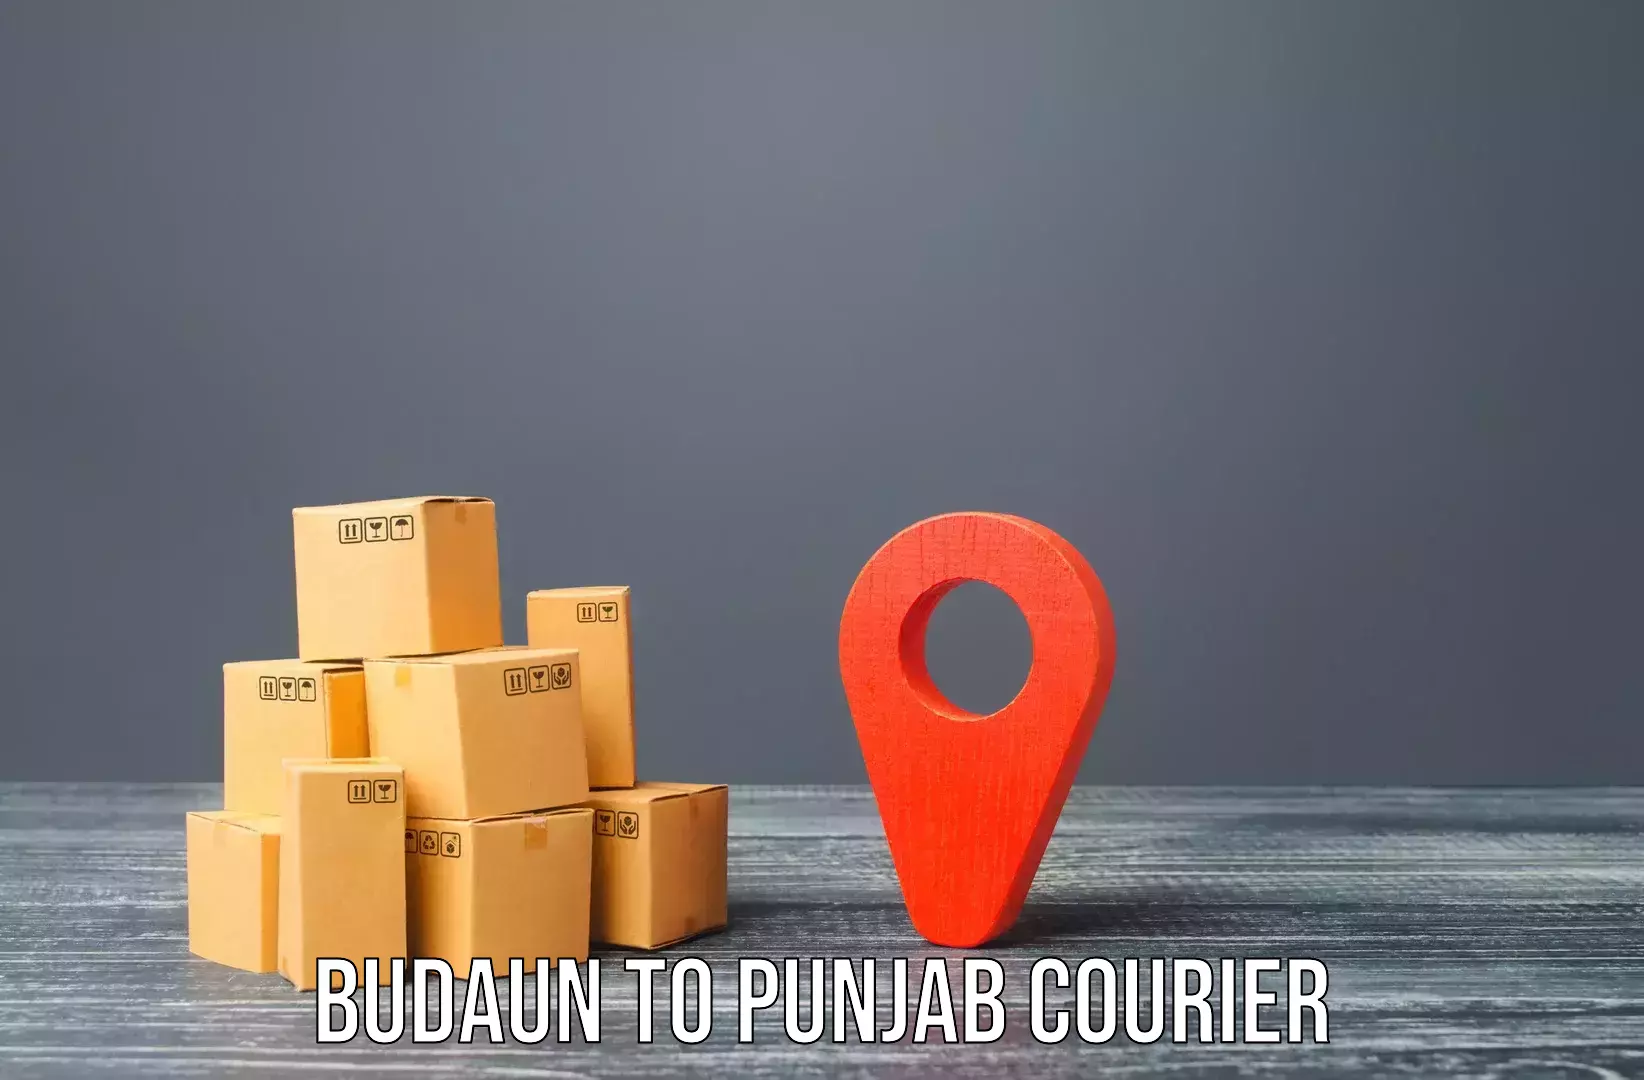 Furniture handling services Budaun to Punjab